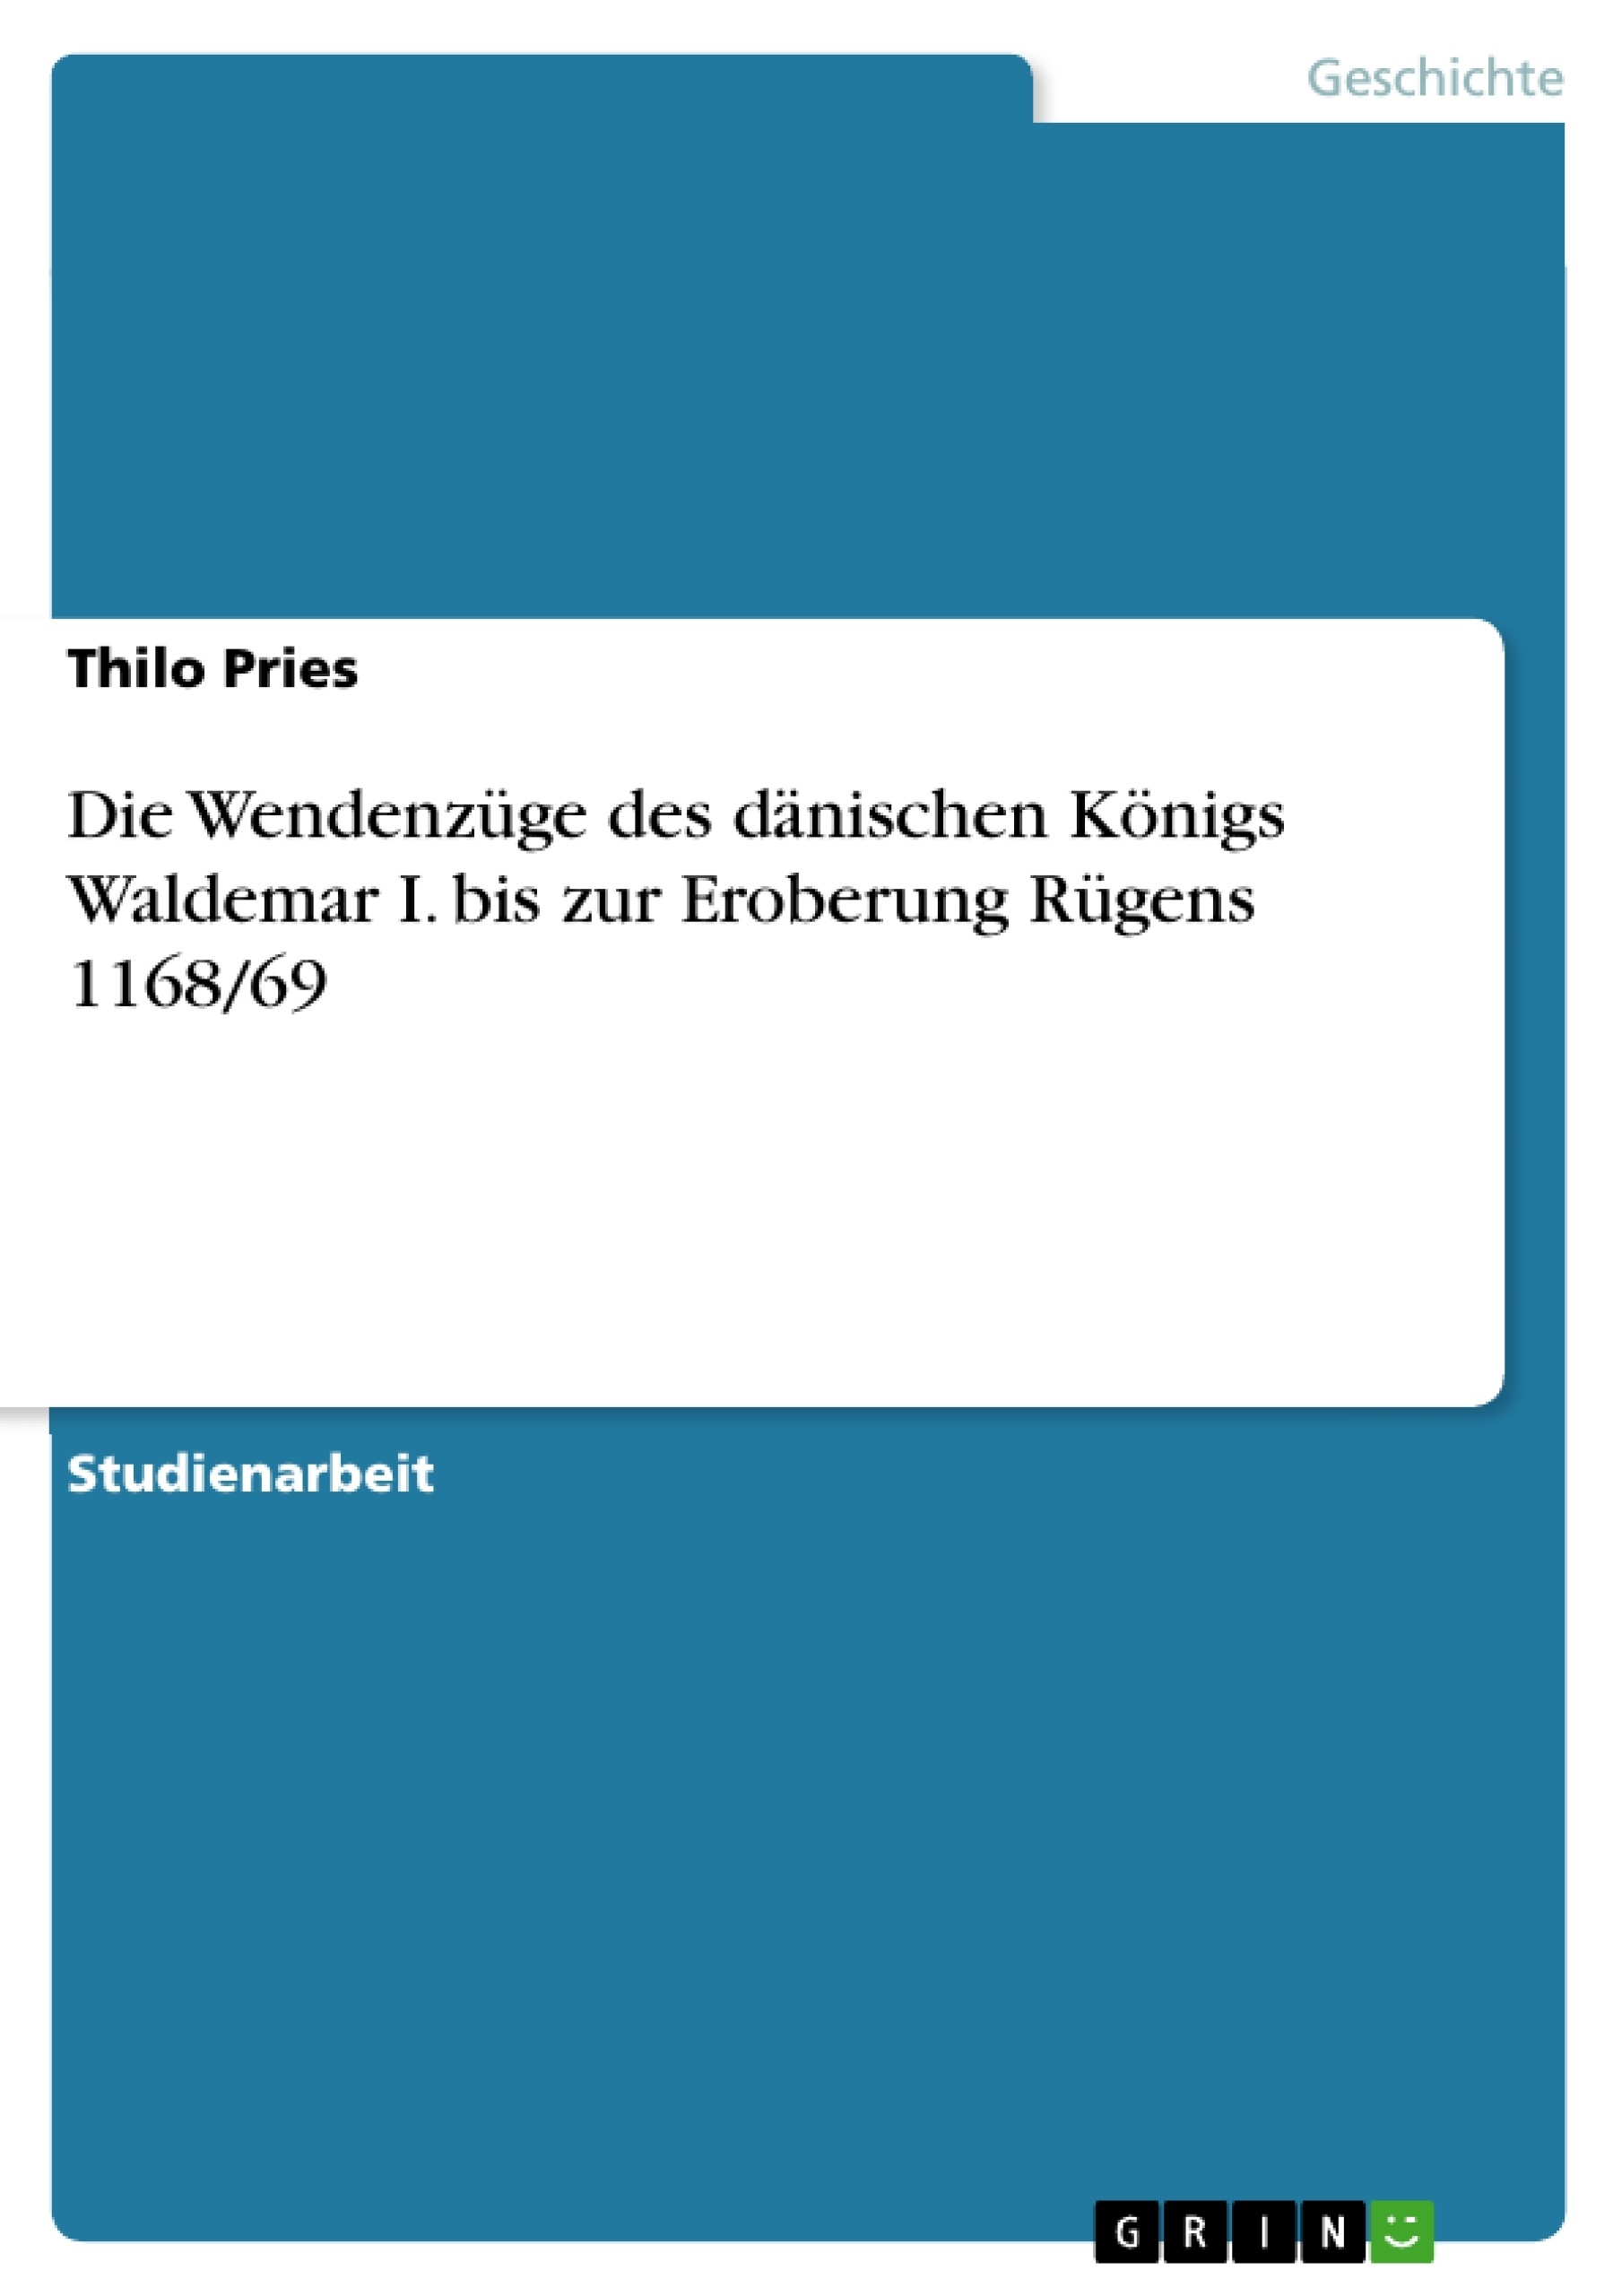 Titel: Die Wendenzüge des dänischen Königs Waldemar I. bis zur Eroberung Rügens 1168/69